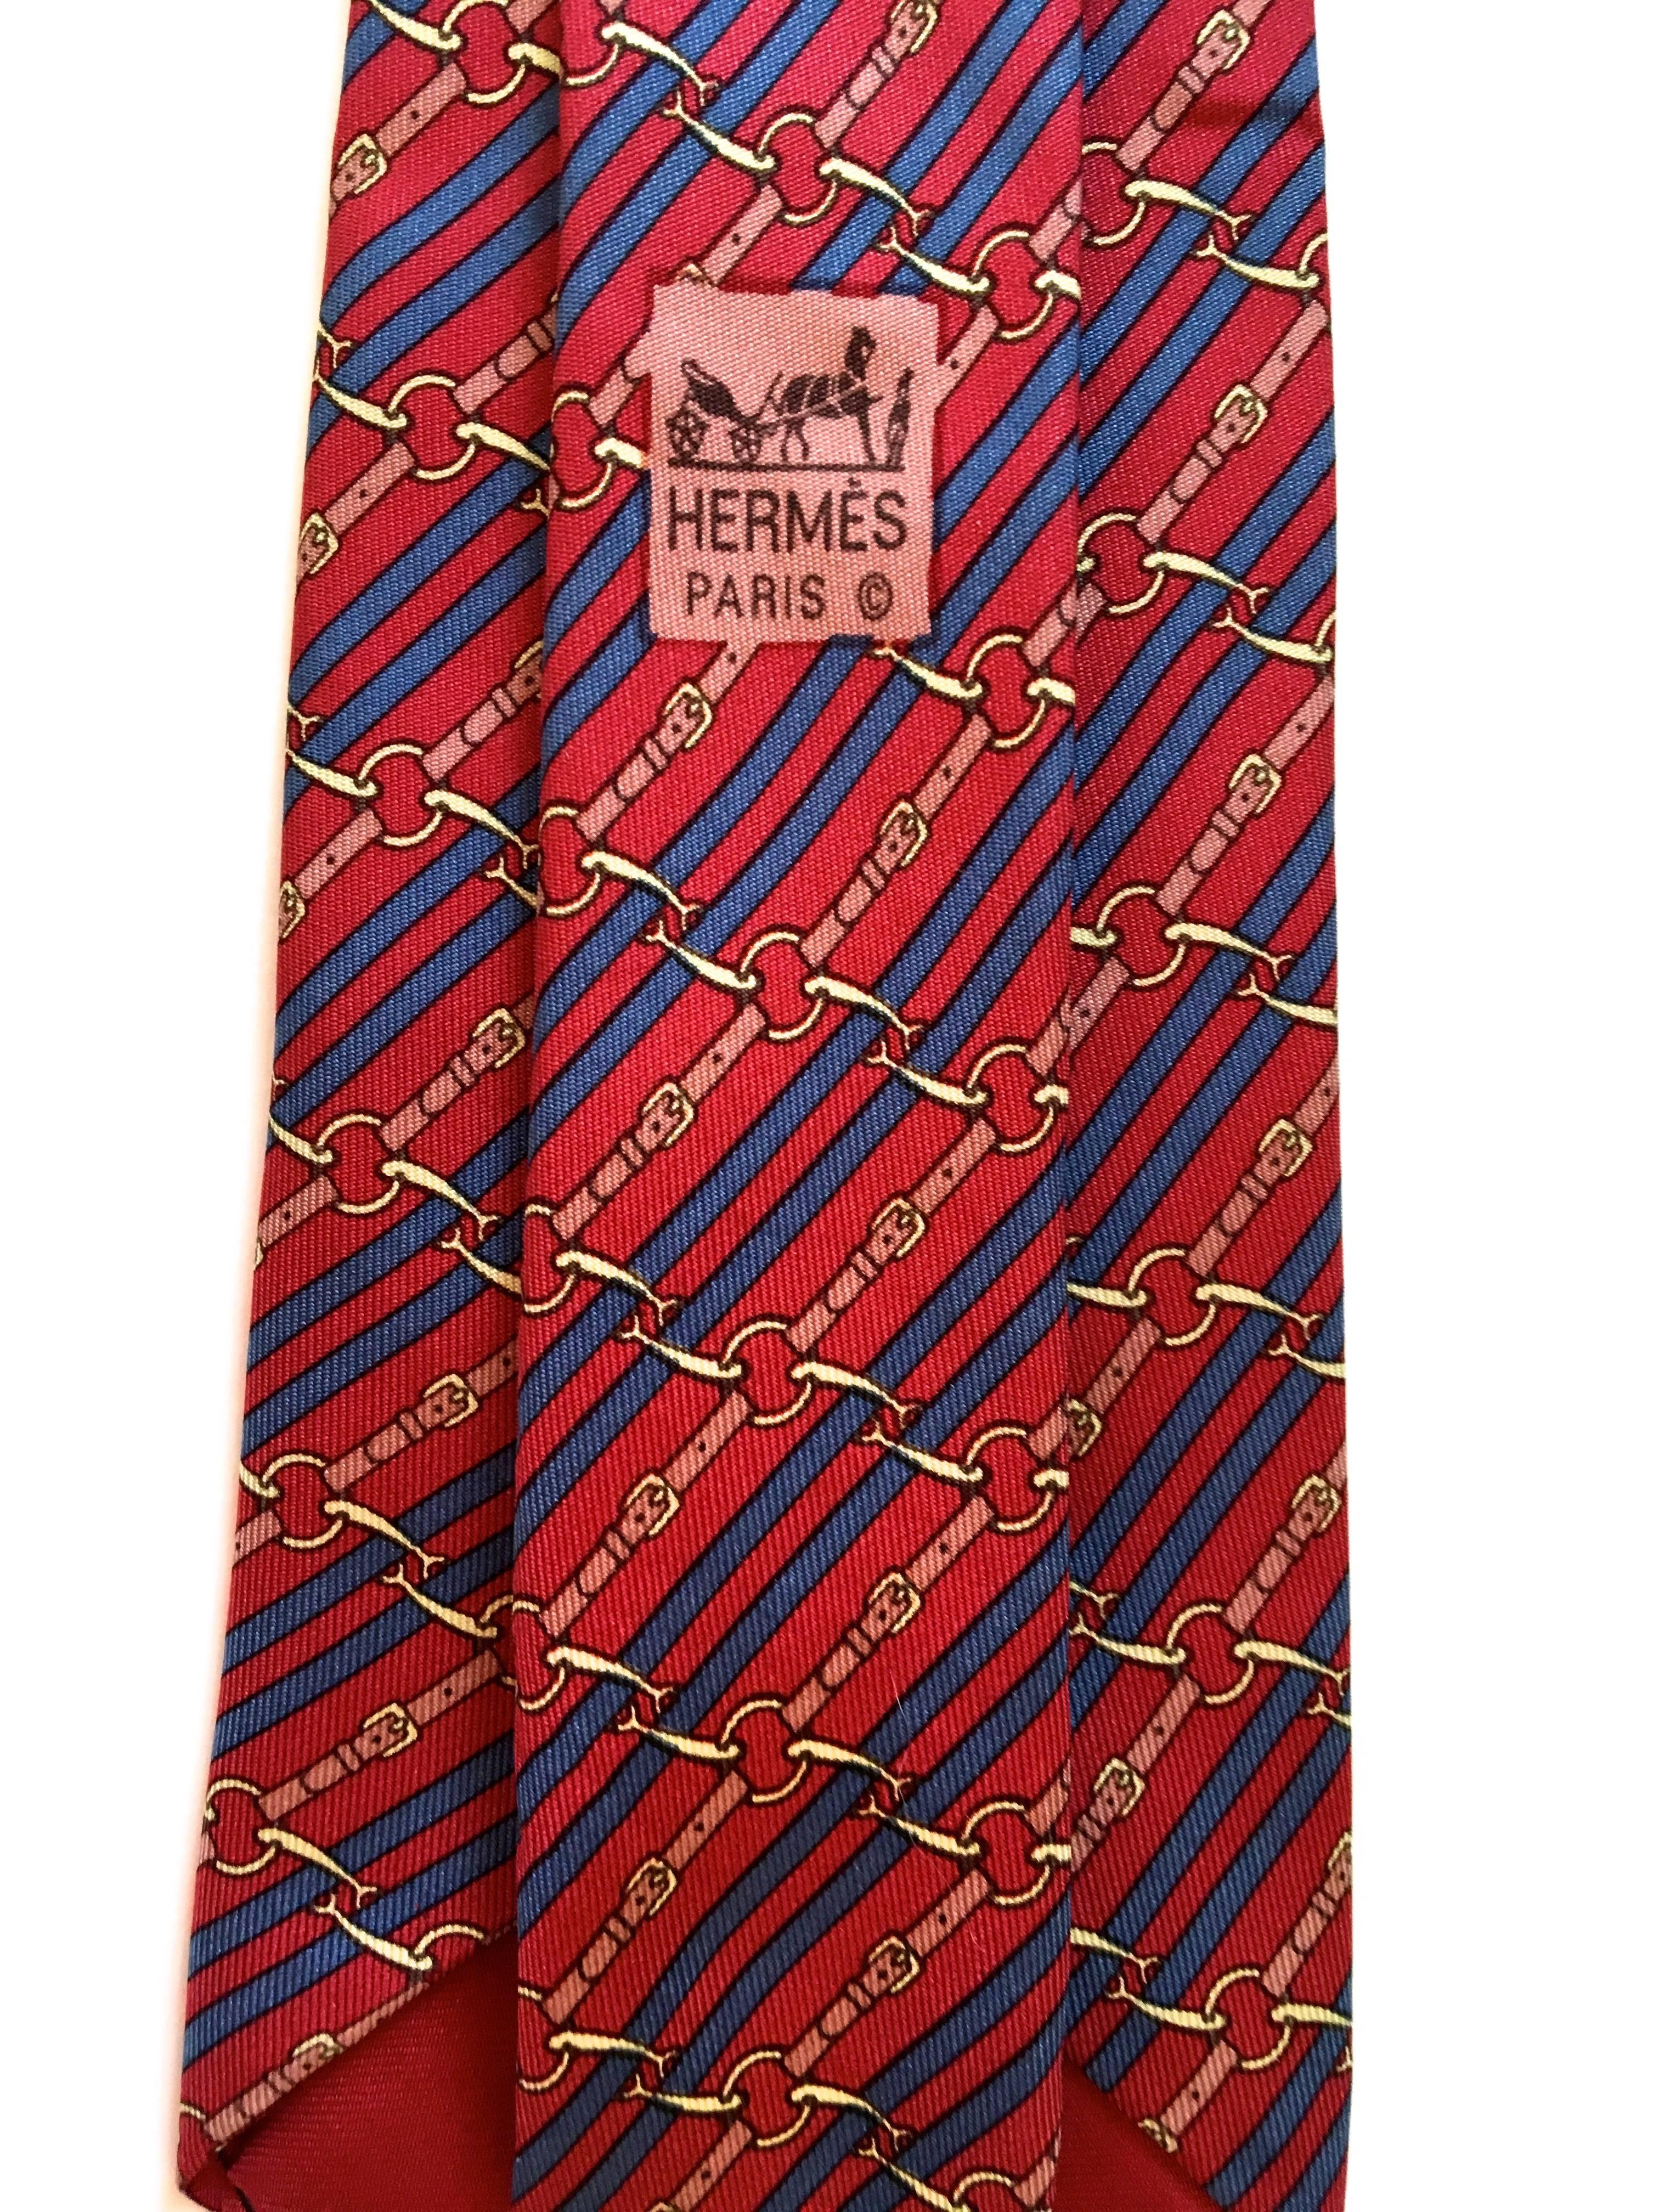 Vintage Hermes Tie - 100% Silk 1